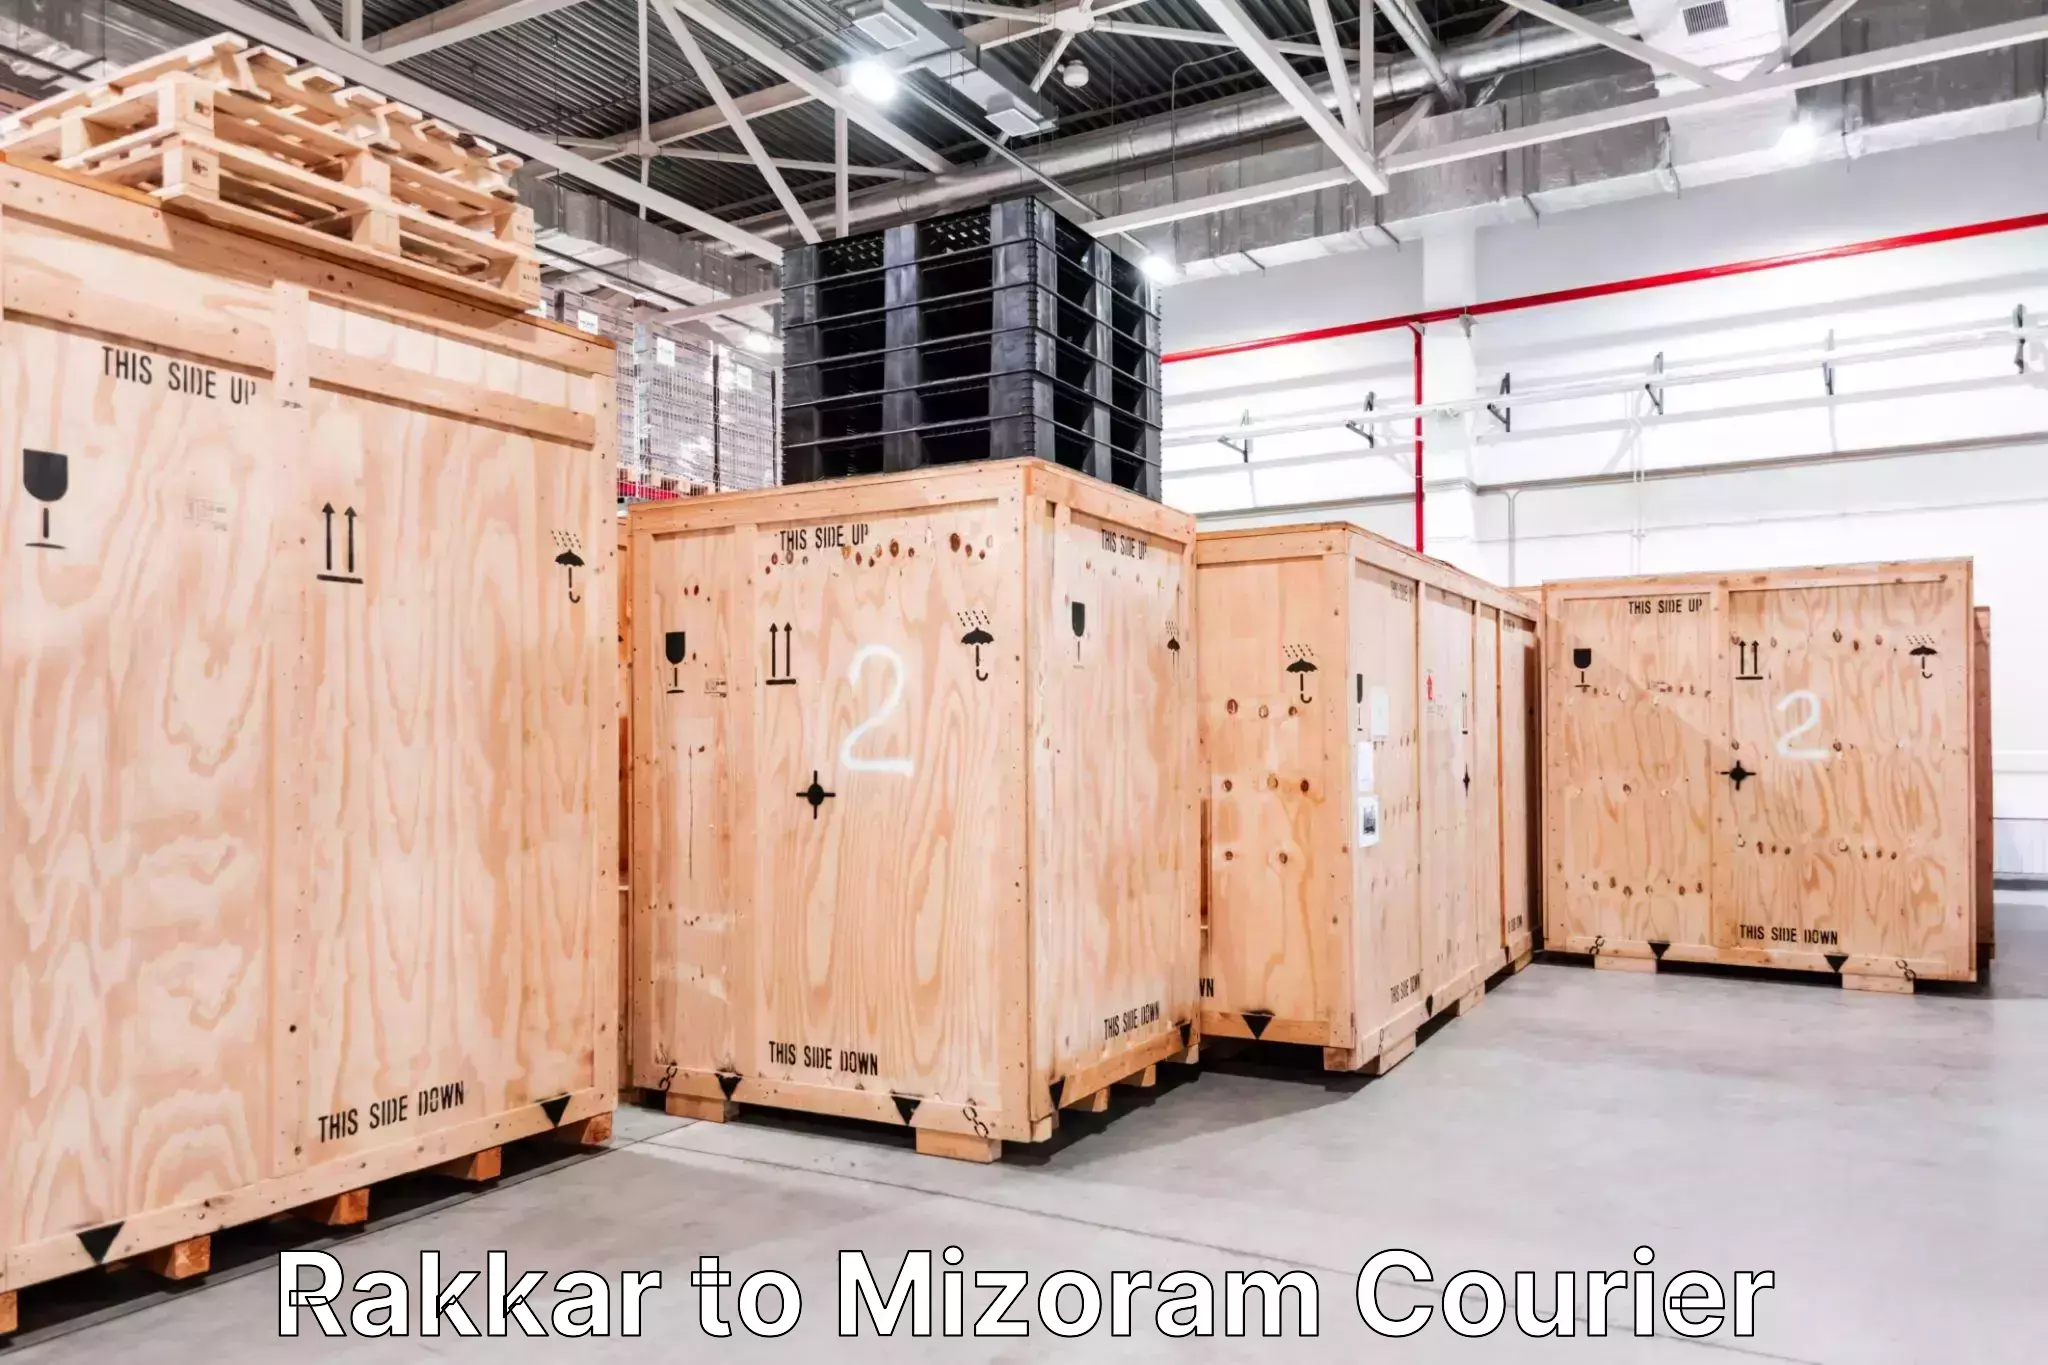 Luggage transfer service Rakkar to Mizoram